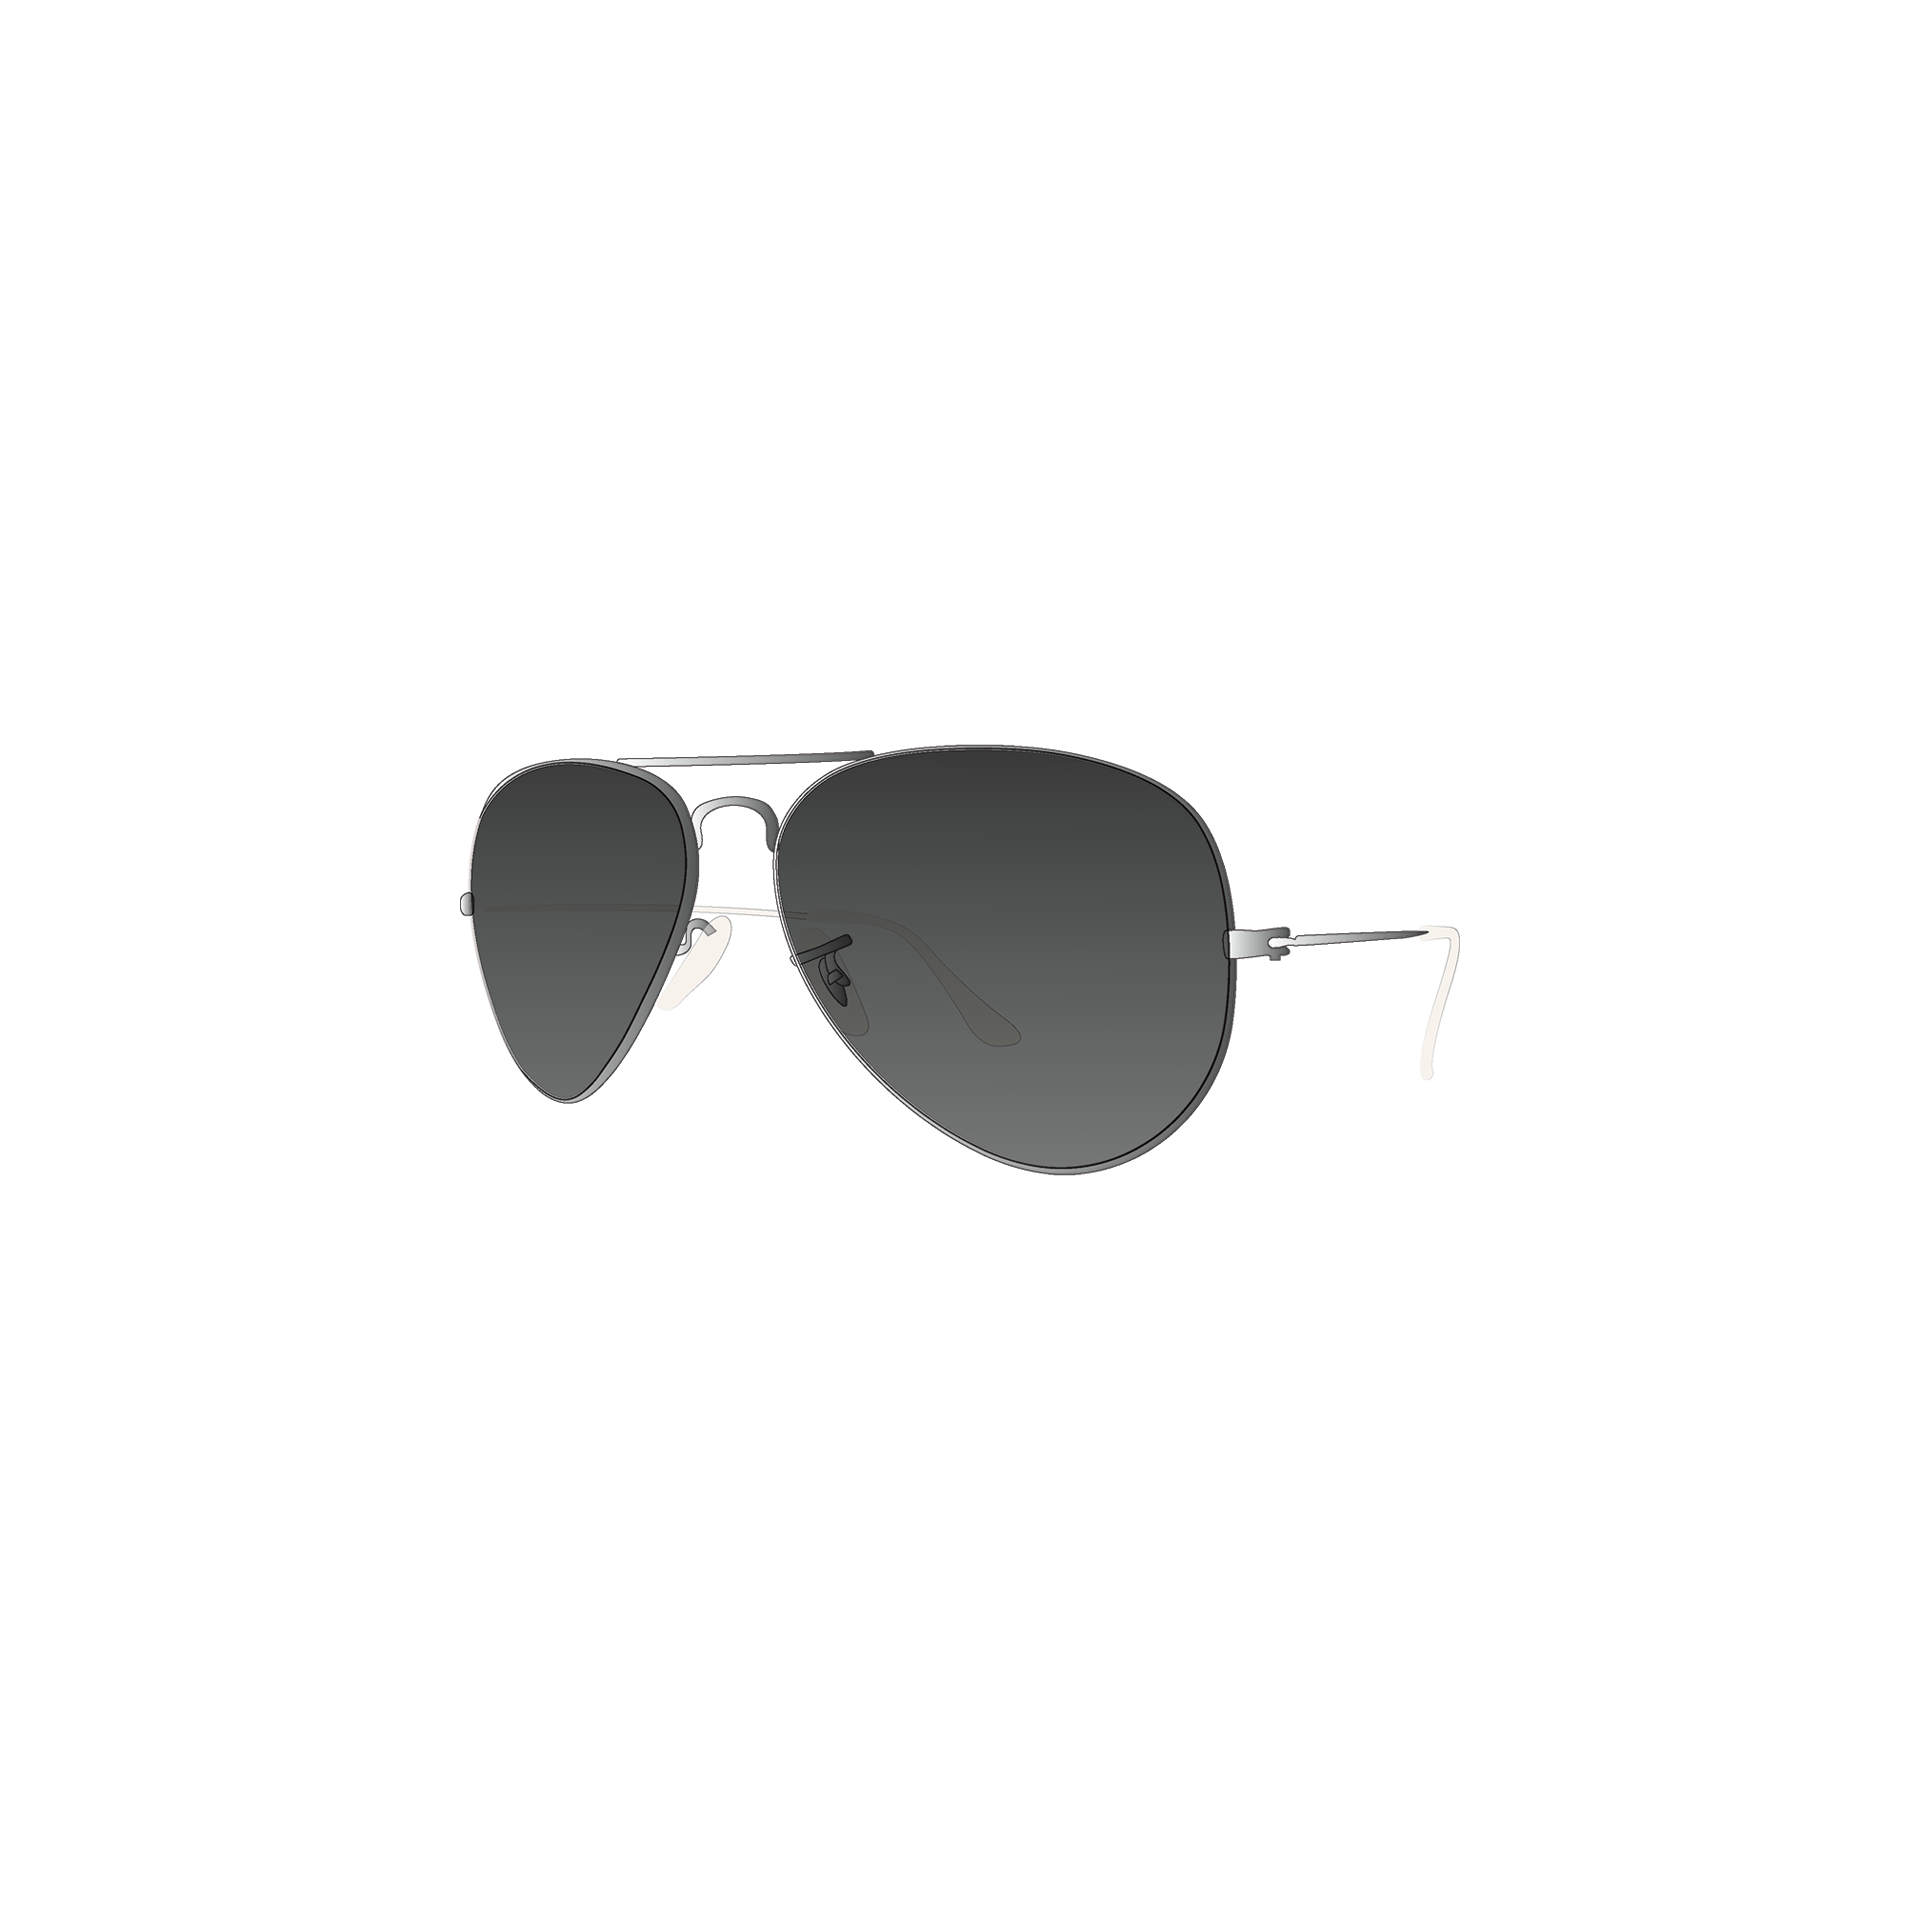 YOUNG SPIRIT LONDON Eyewear online OTTO Trendige Sonnenbrille, Vollrand-Sonnenbrille bestellen bei